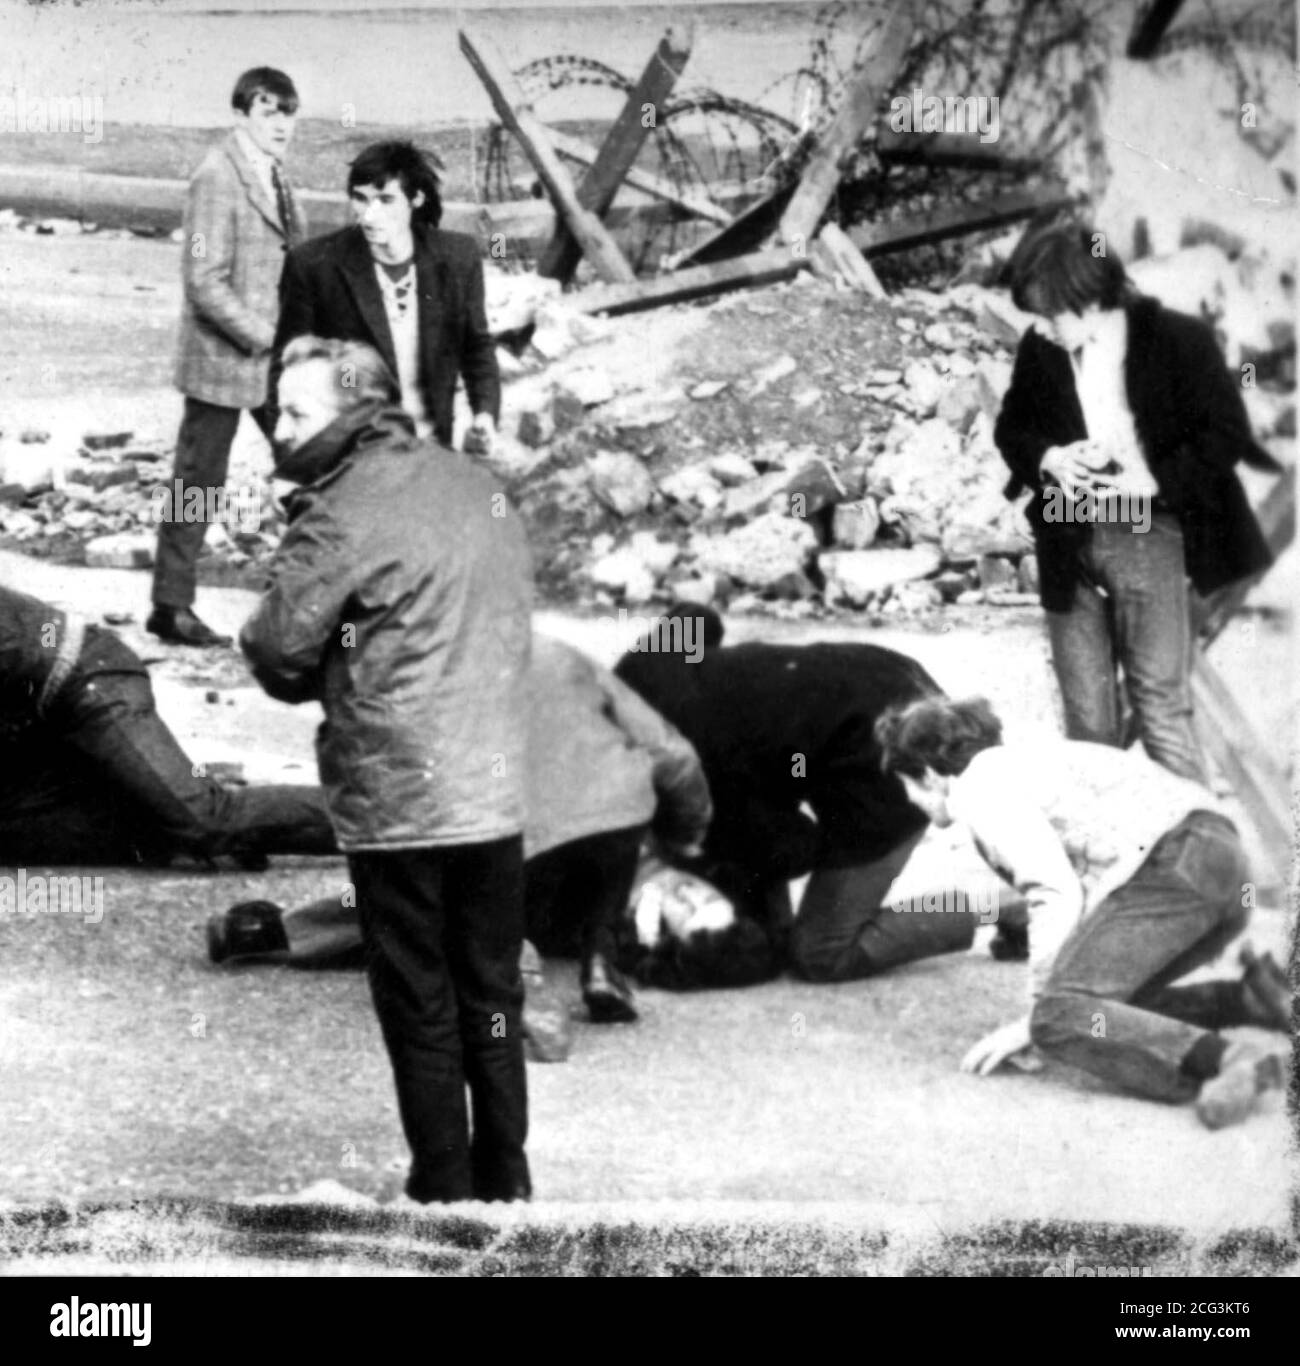 Un uomo che riceve attenzione durante l'incidente di tiro a Londonderry, Irlanda del Nord, che è diventato noto come Bloody Domenica. Sdraiato a terra è un uomo che riceve attenzione, mentre il giovane in una giacca sportiva (estrema sinistra, in alto) è detto per essere Michael McDaid, 17, che è stato successivamente ucciso. *25/01/97: Diverse centinaia di dimostranti hanno iniziato una marcia attraverso Londra del nord per celebrare il 25° anniversario della domenica di Bloody. * la polizia montata ha scortato i manifestanti mentre sfilavano accanto a bande di pipe e attivisti che agitavano la bandiera da Highbury Fields ad Archway. Il negoziatore capo di Sinn Fein Martin McGuinness w Foto Stock